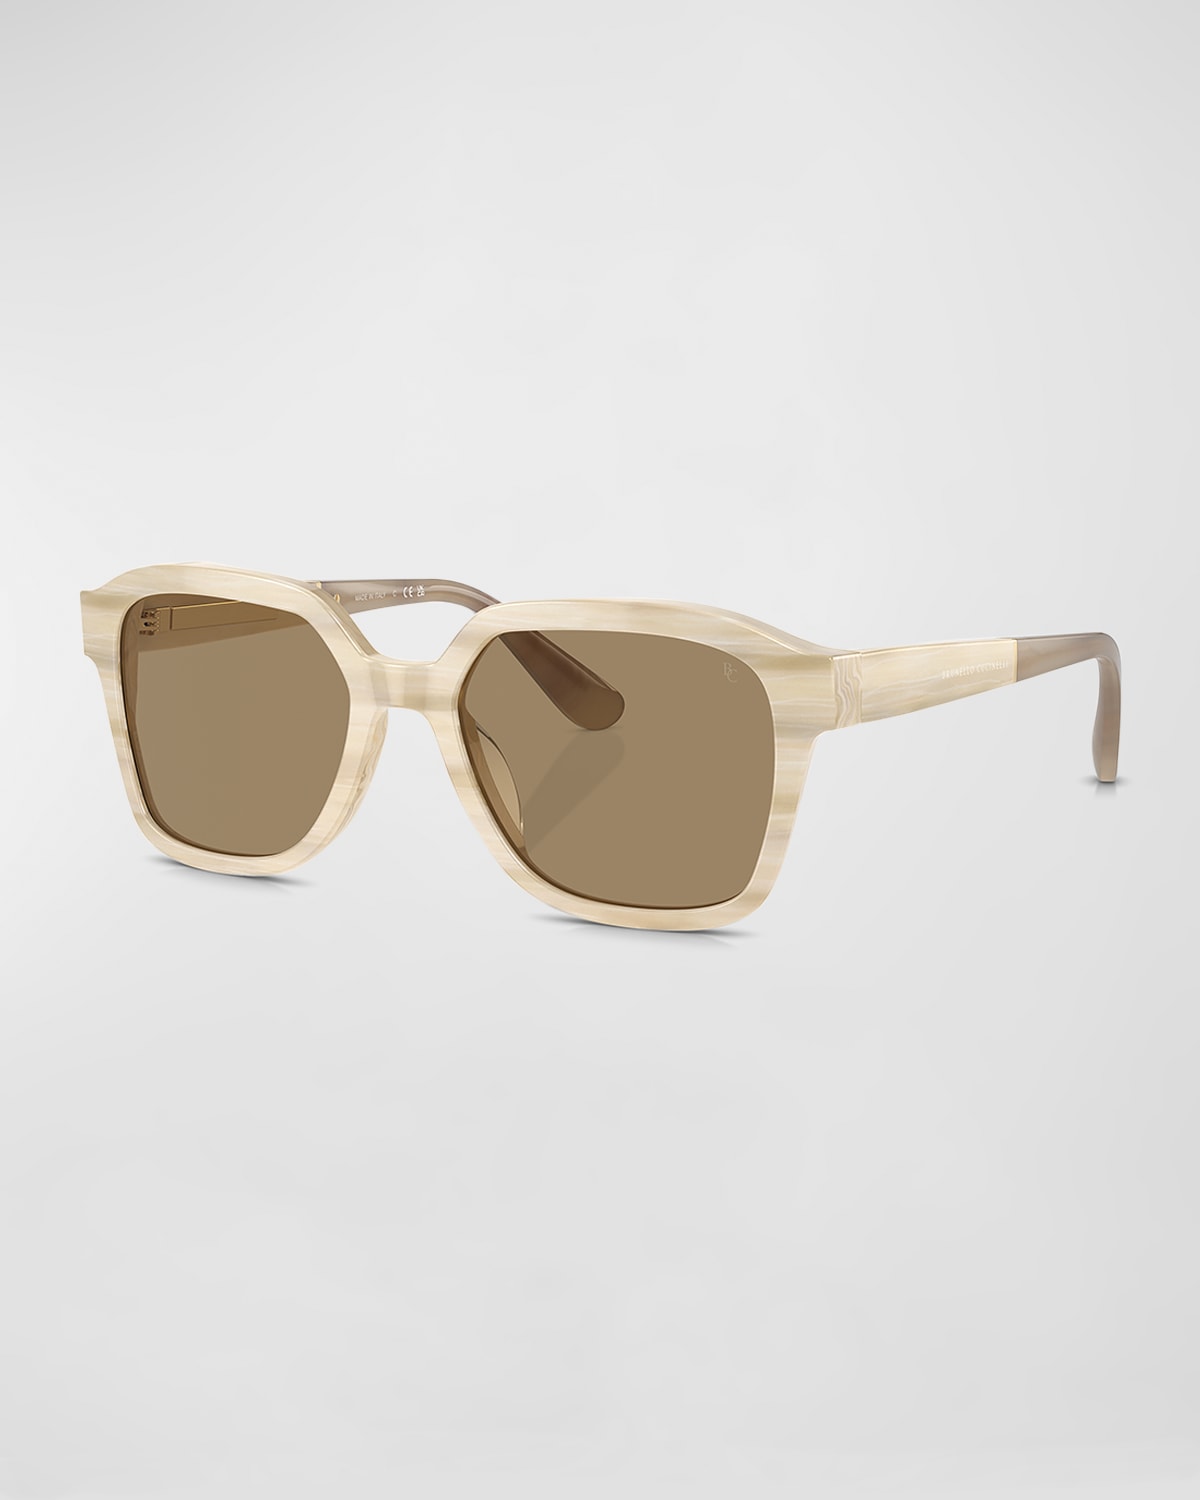 Brunello Cucinelli Modern Acetate Square Sunglasses In Light Brown